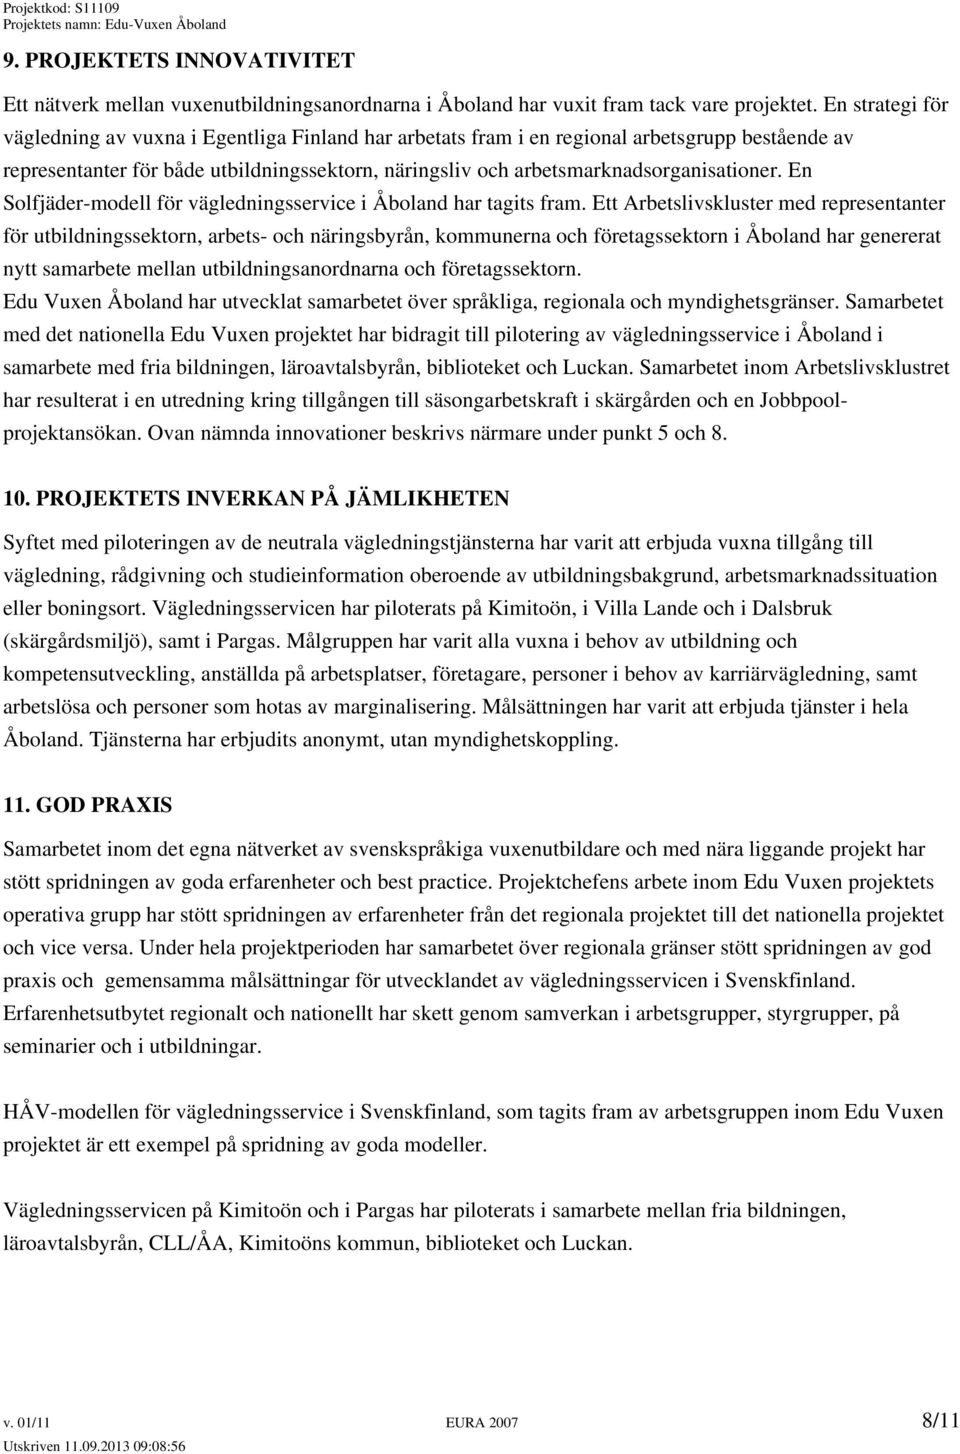 arbetsmarknadsorganisationer. En Solfjäder-modell för vägledningsservice i Åboland har tagits fram.